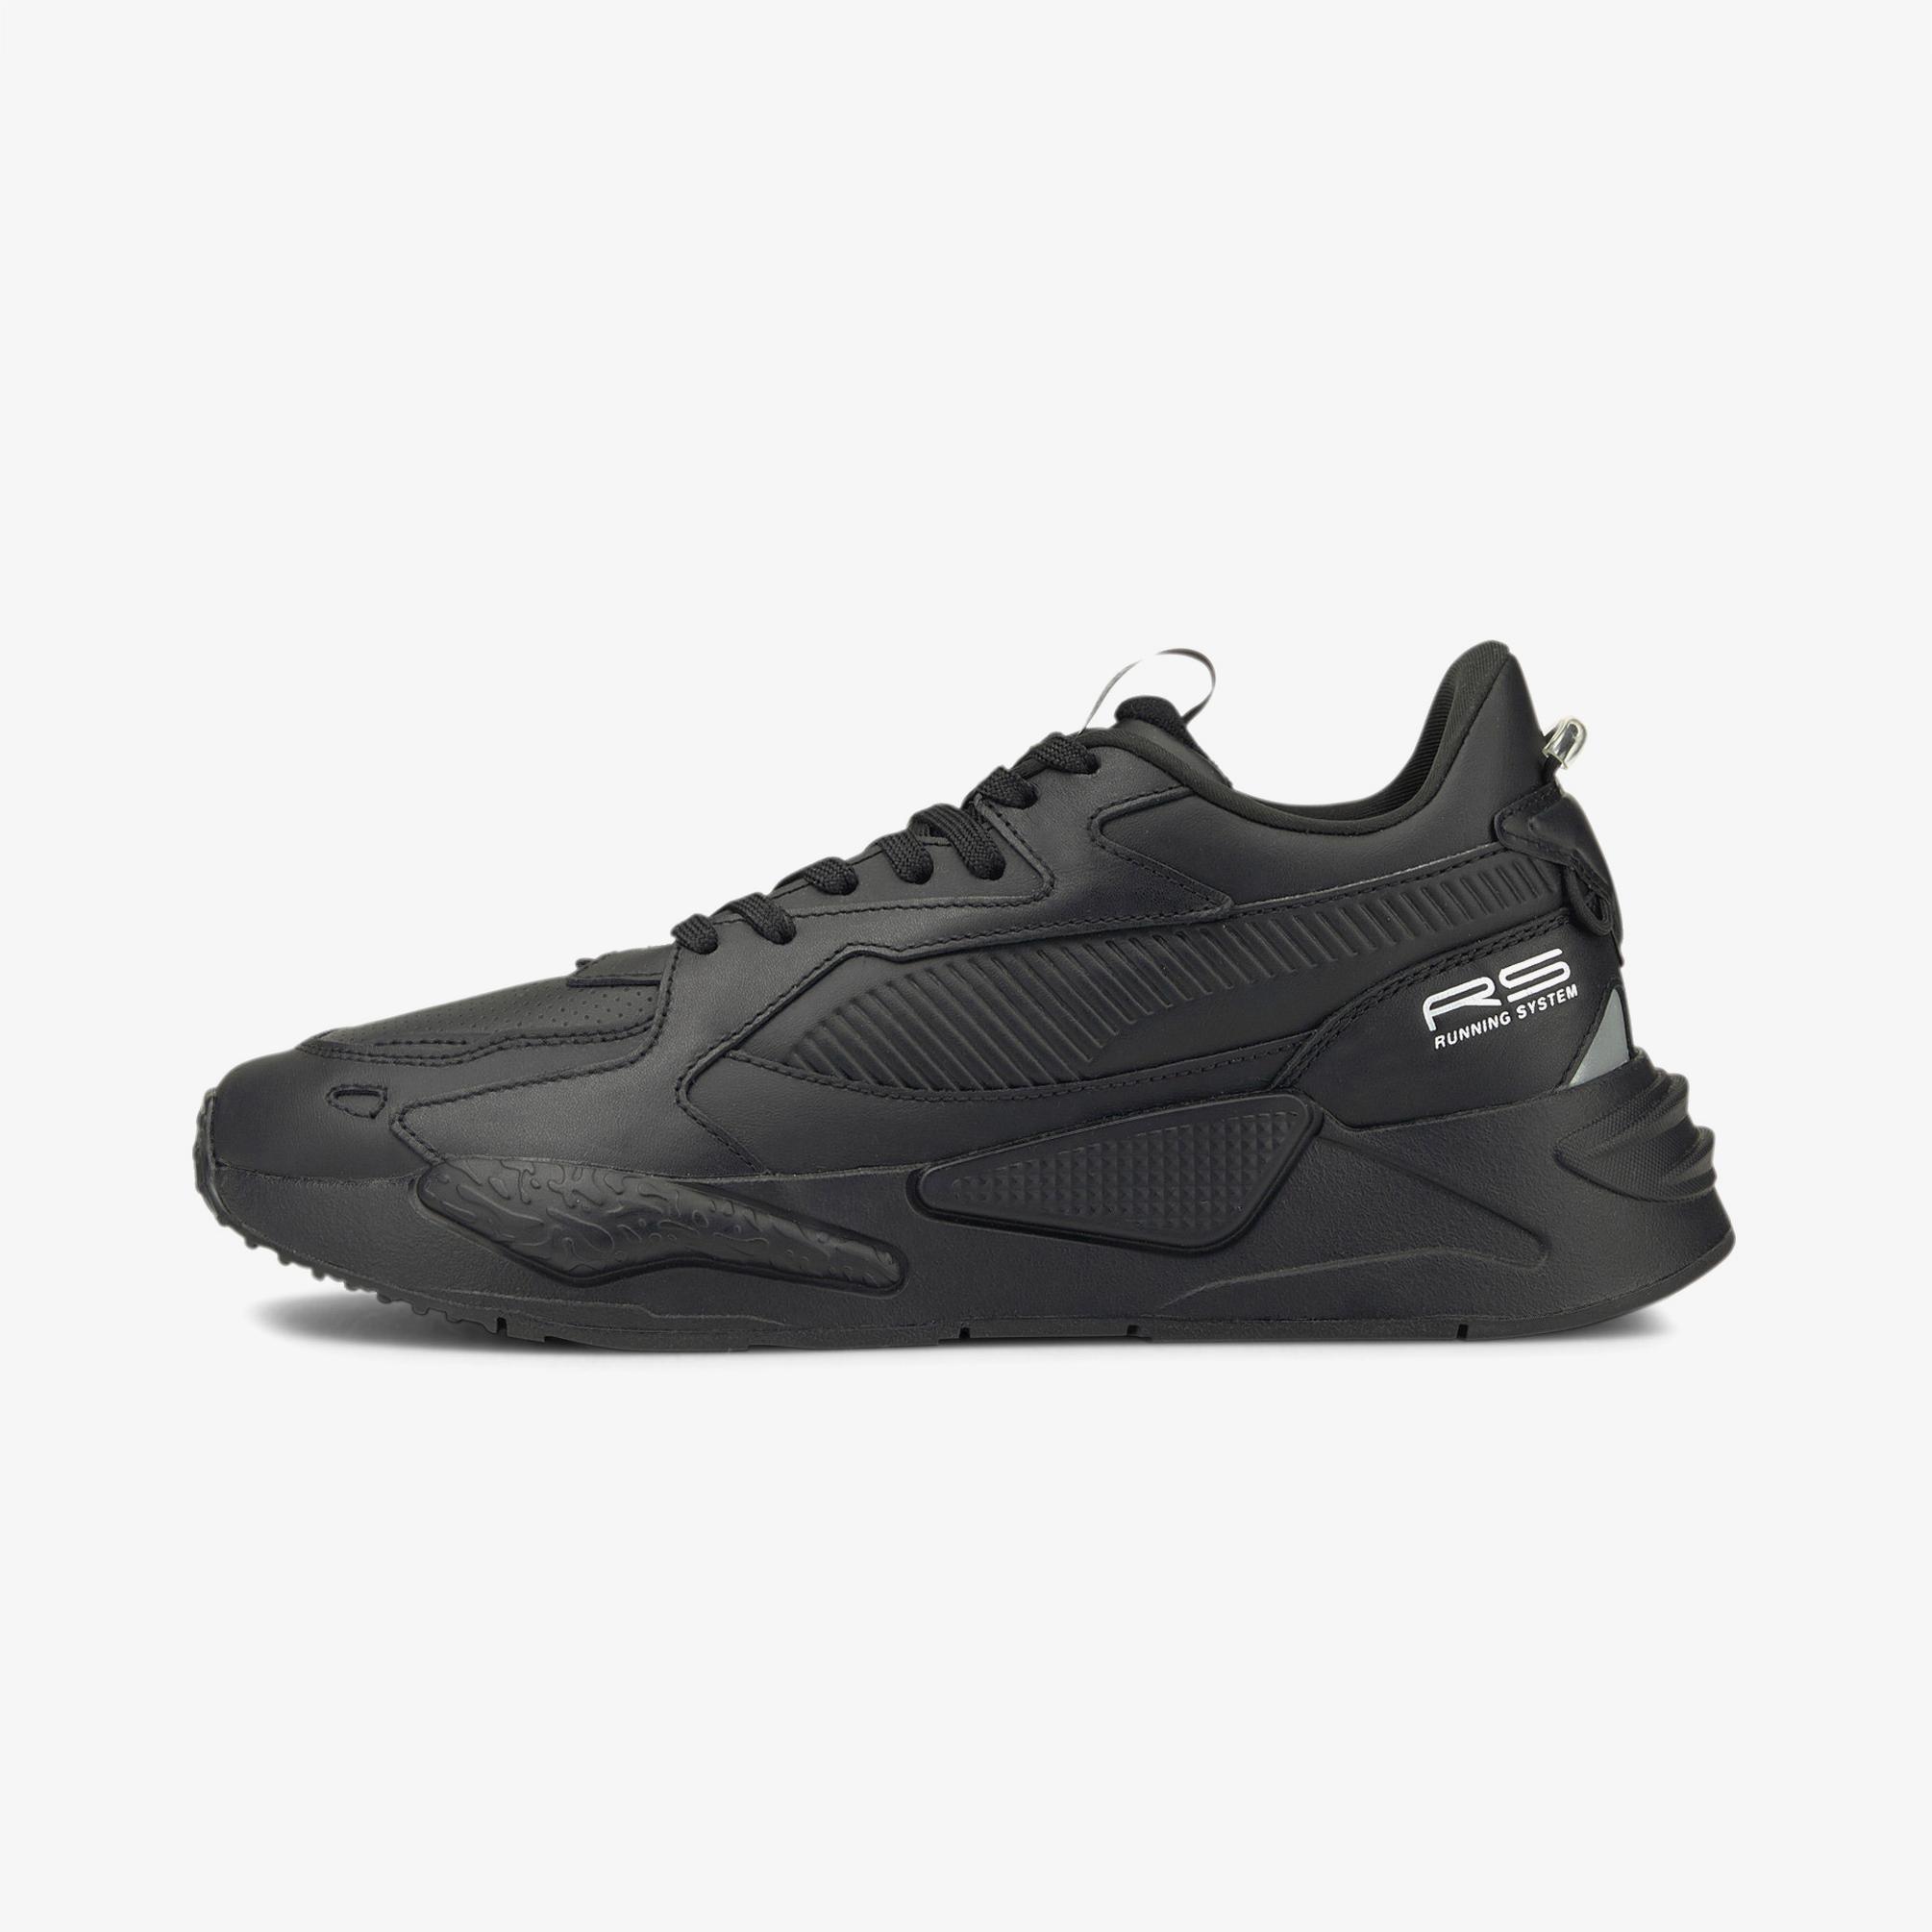  Puma Rs-Z Leather Erkek Siyah Spor Ayakkabı